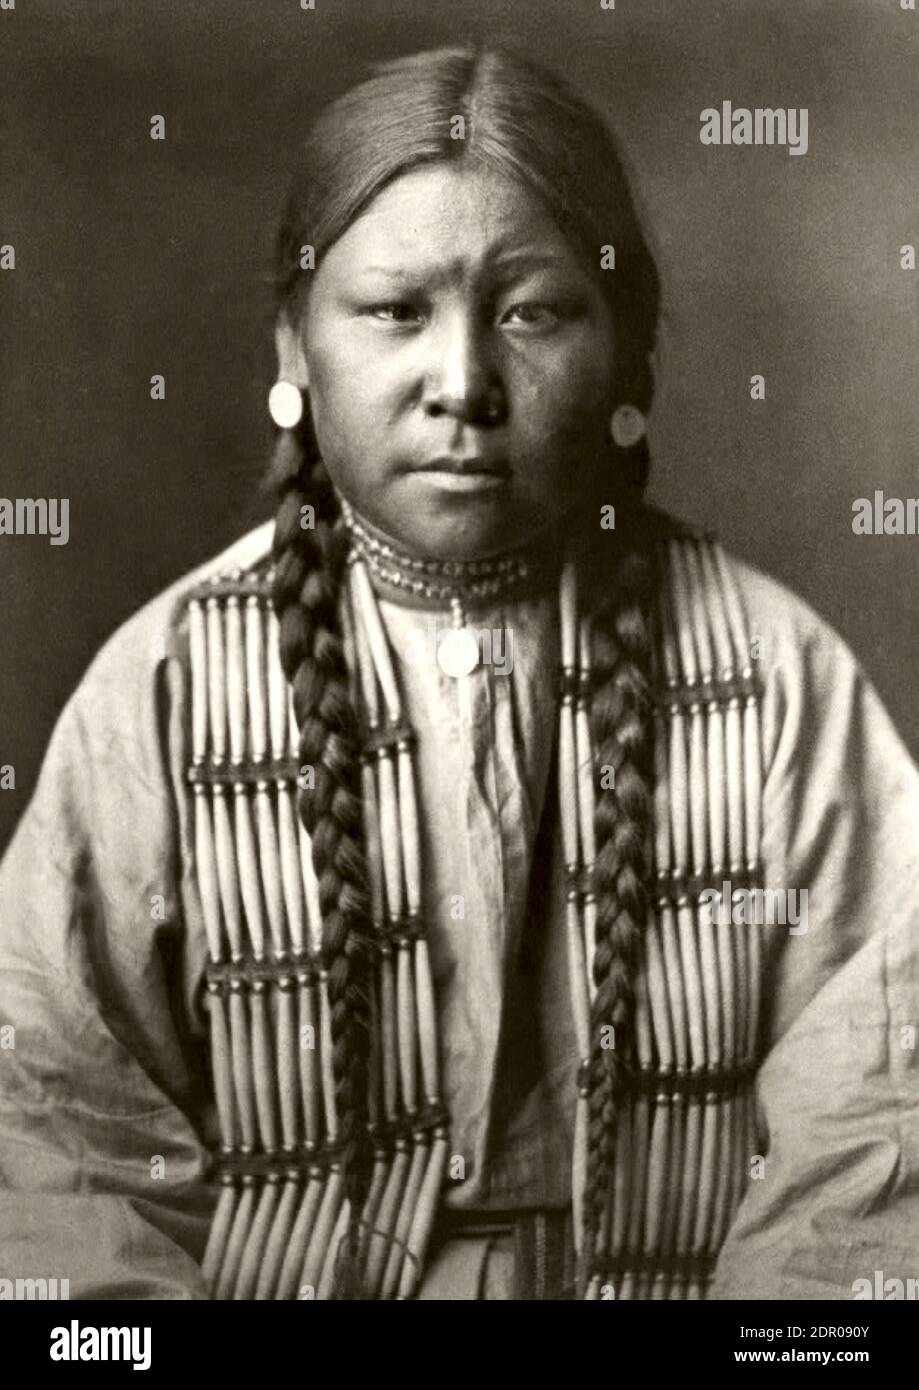 Photographie vintage intitulée Mädchen der Cheyenne par Edward Curtis, 1911. Femme américaine indigène avec ses cheveux tressés et en costume traditionnel. Banque D'Images